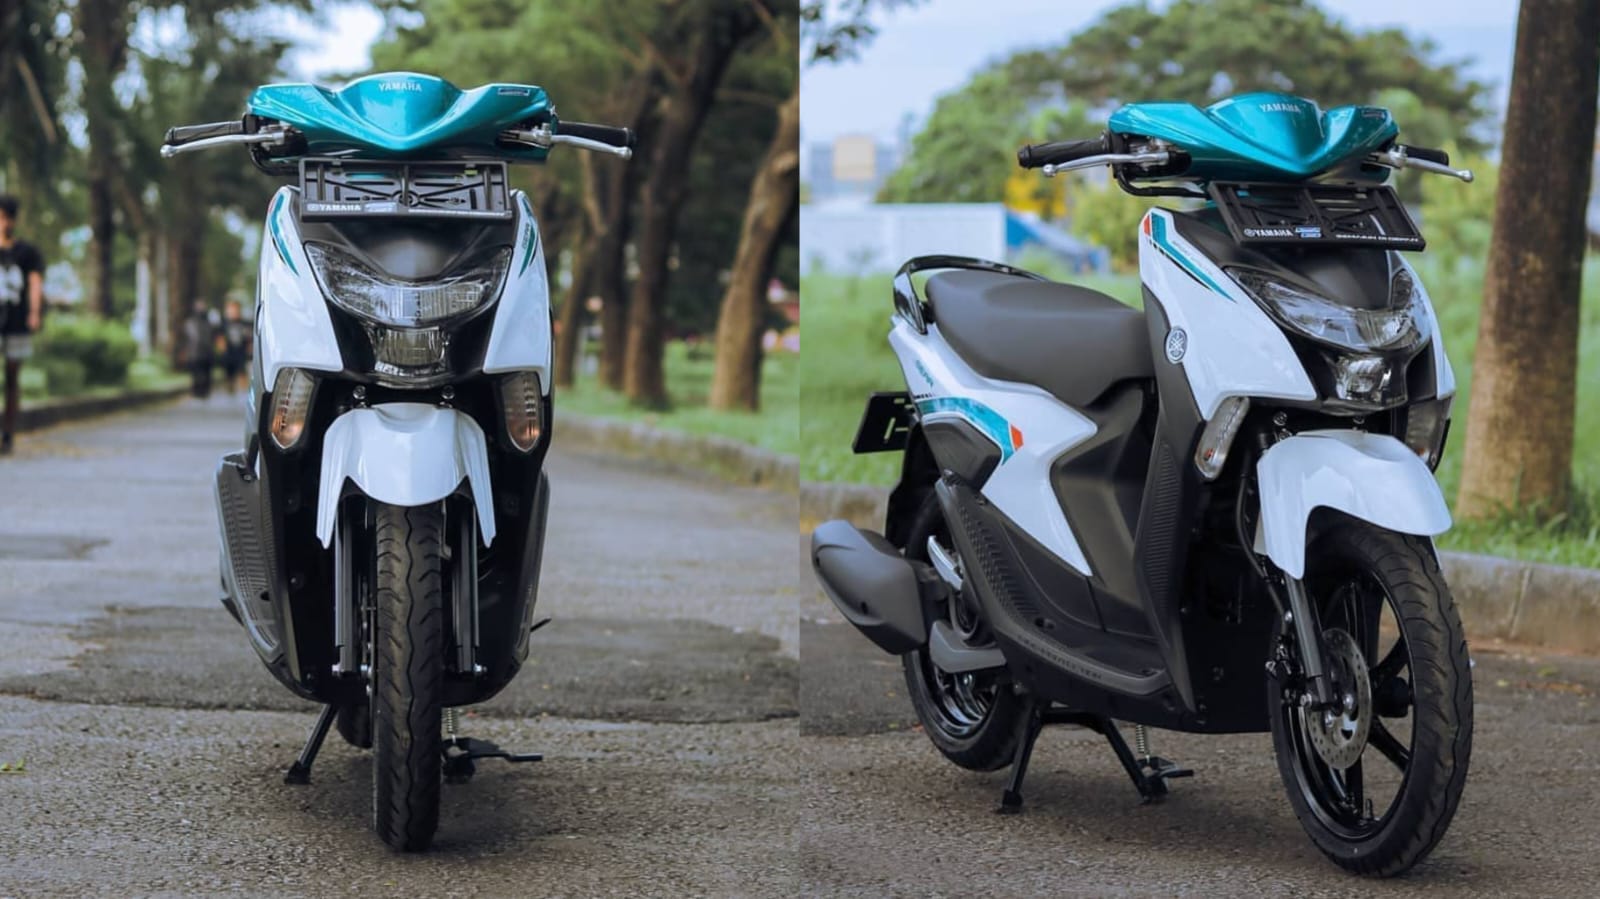 Cuma 18 Juta! Yamaha Gear 125 Mengusung Fitur Canggih Layaknya Motor Kelas Atas, Cek Simulasi Kreditnya